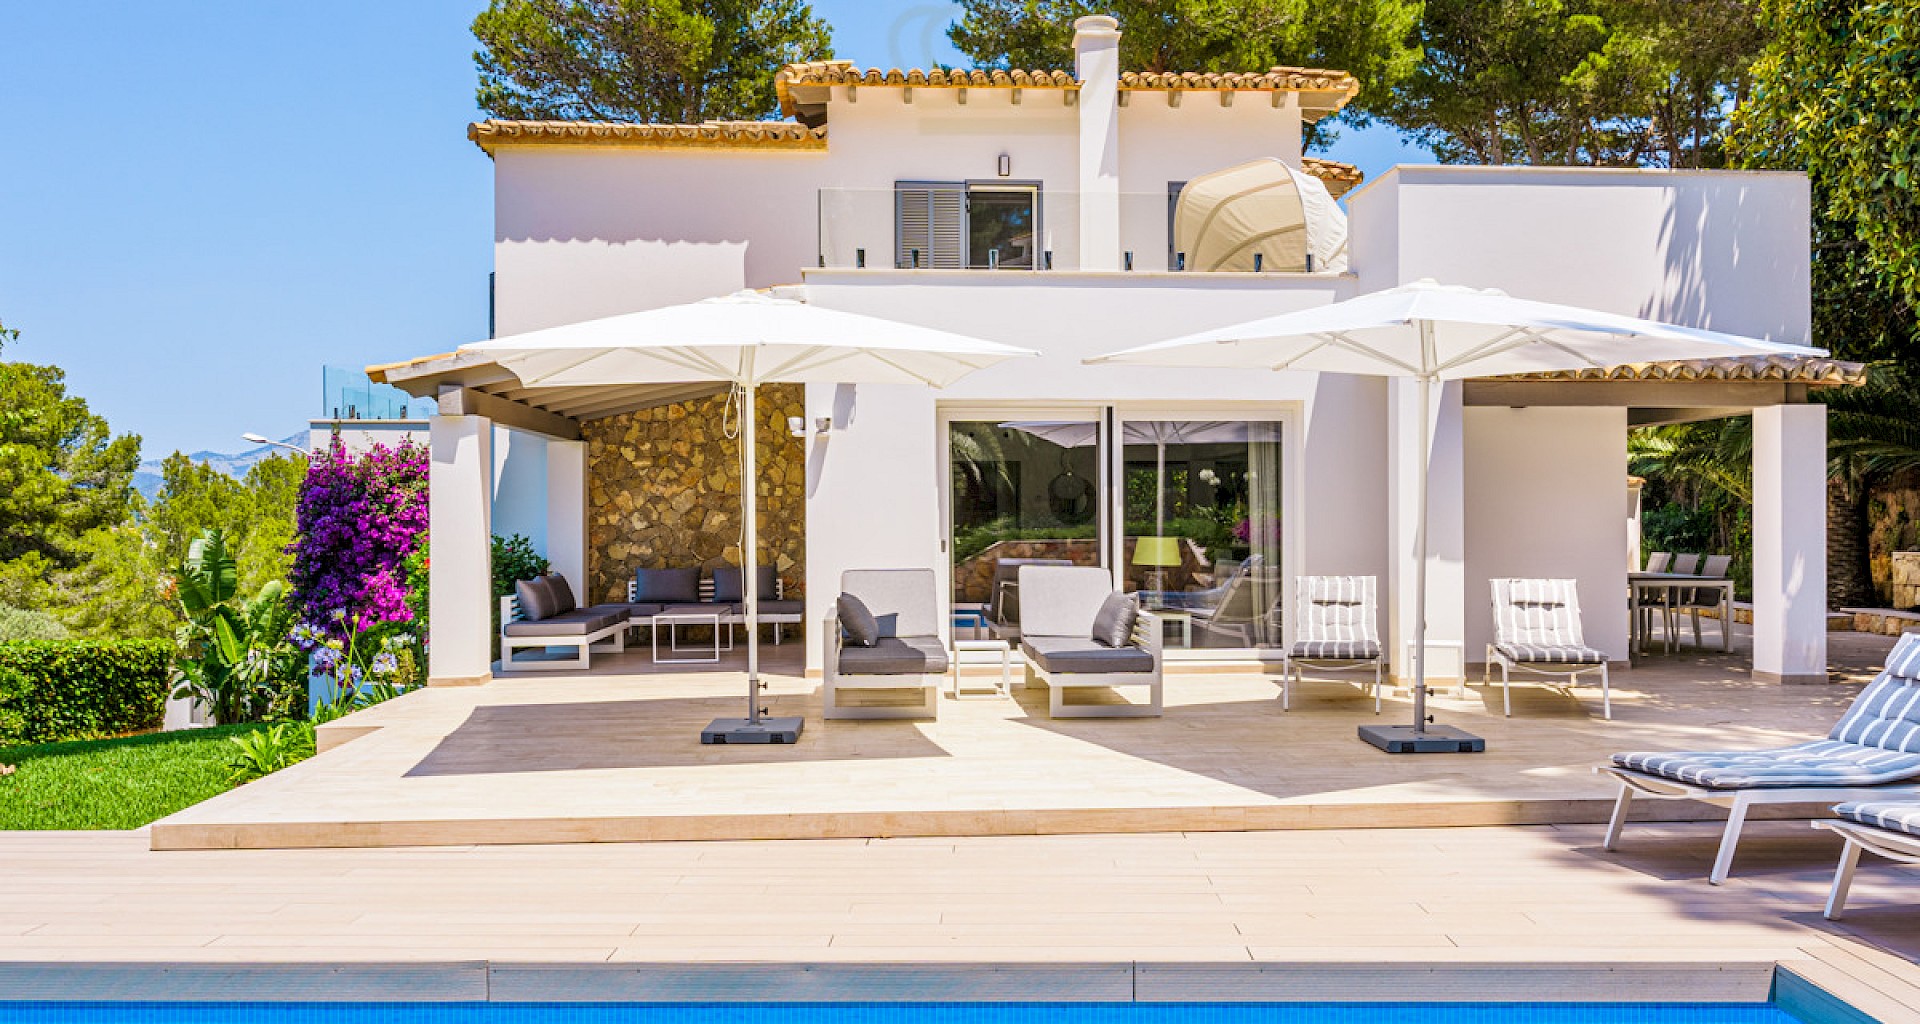 KROHN & LUEDEMANN Licence de location de vacances - Villa familiale de haute qualité à Santa Ponsa avec piscine 